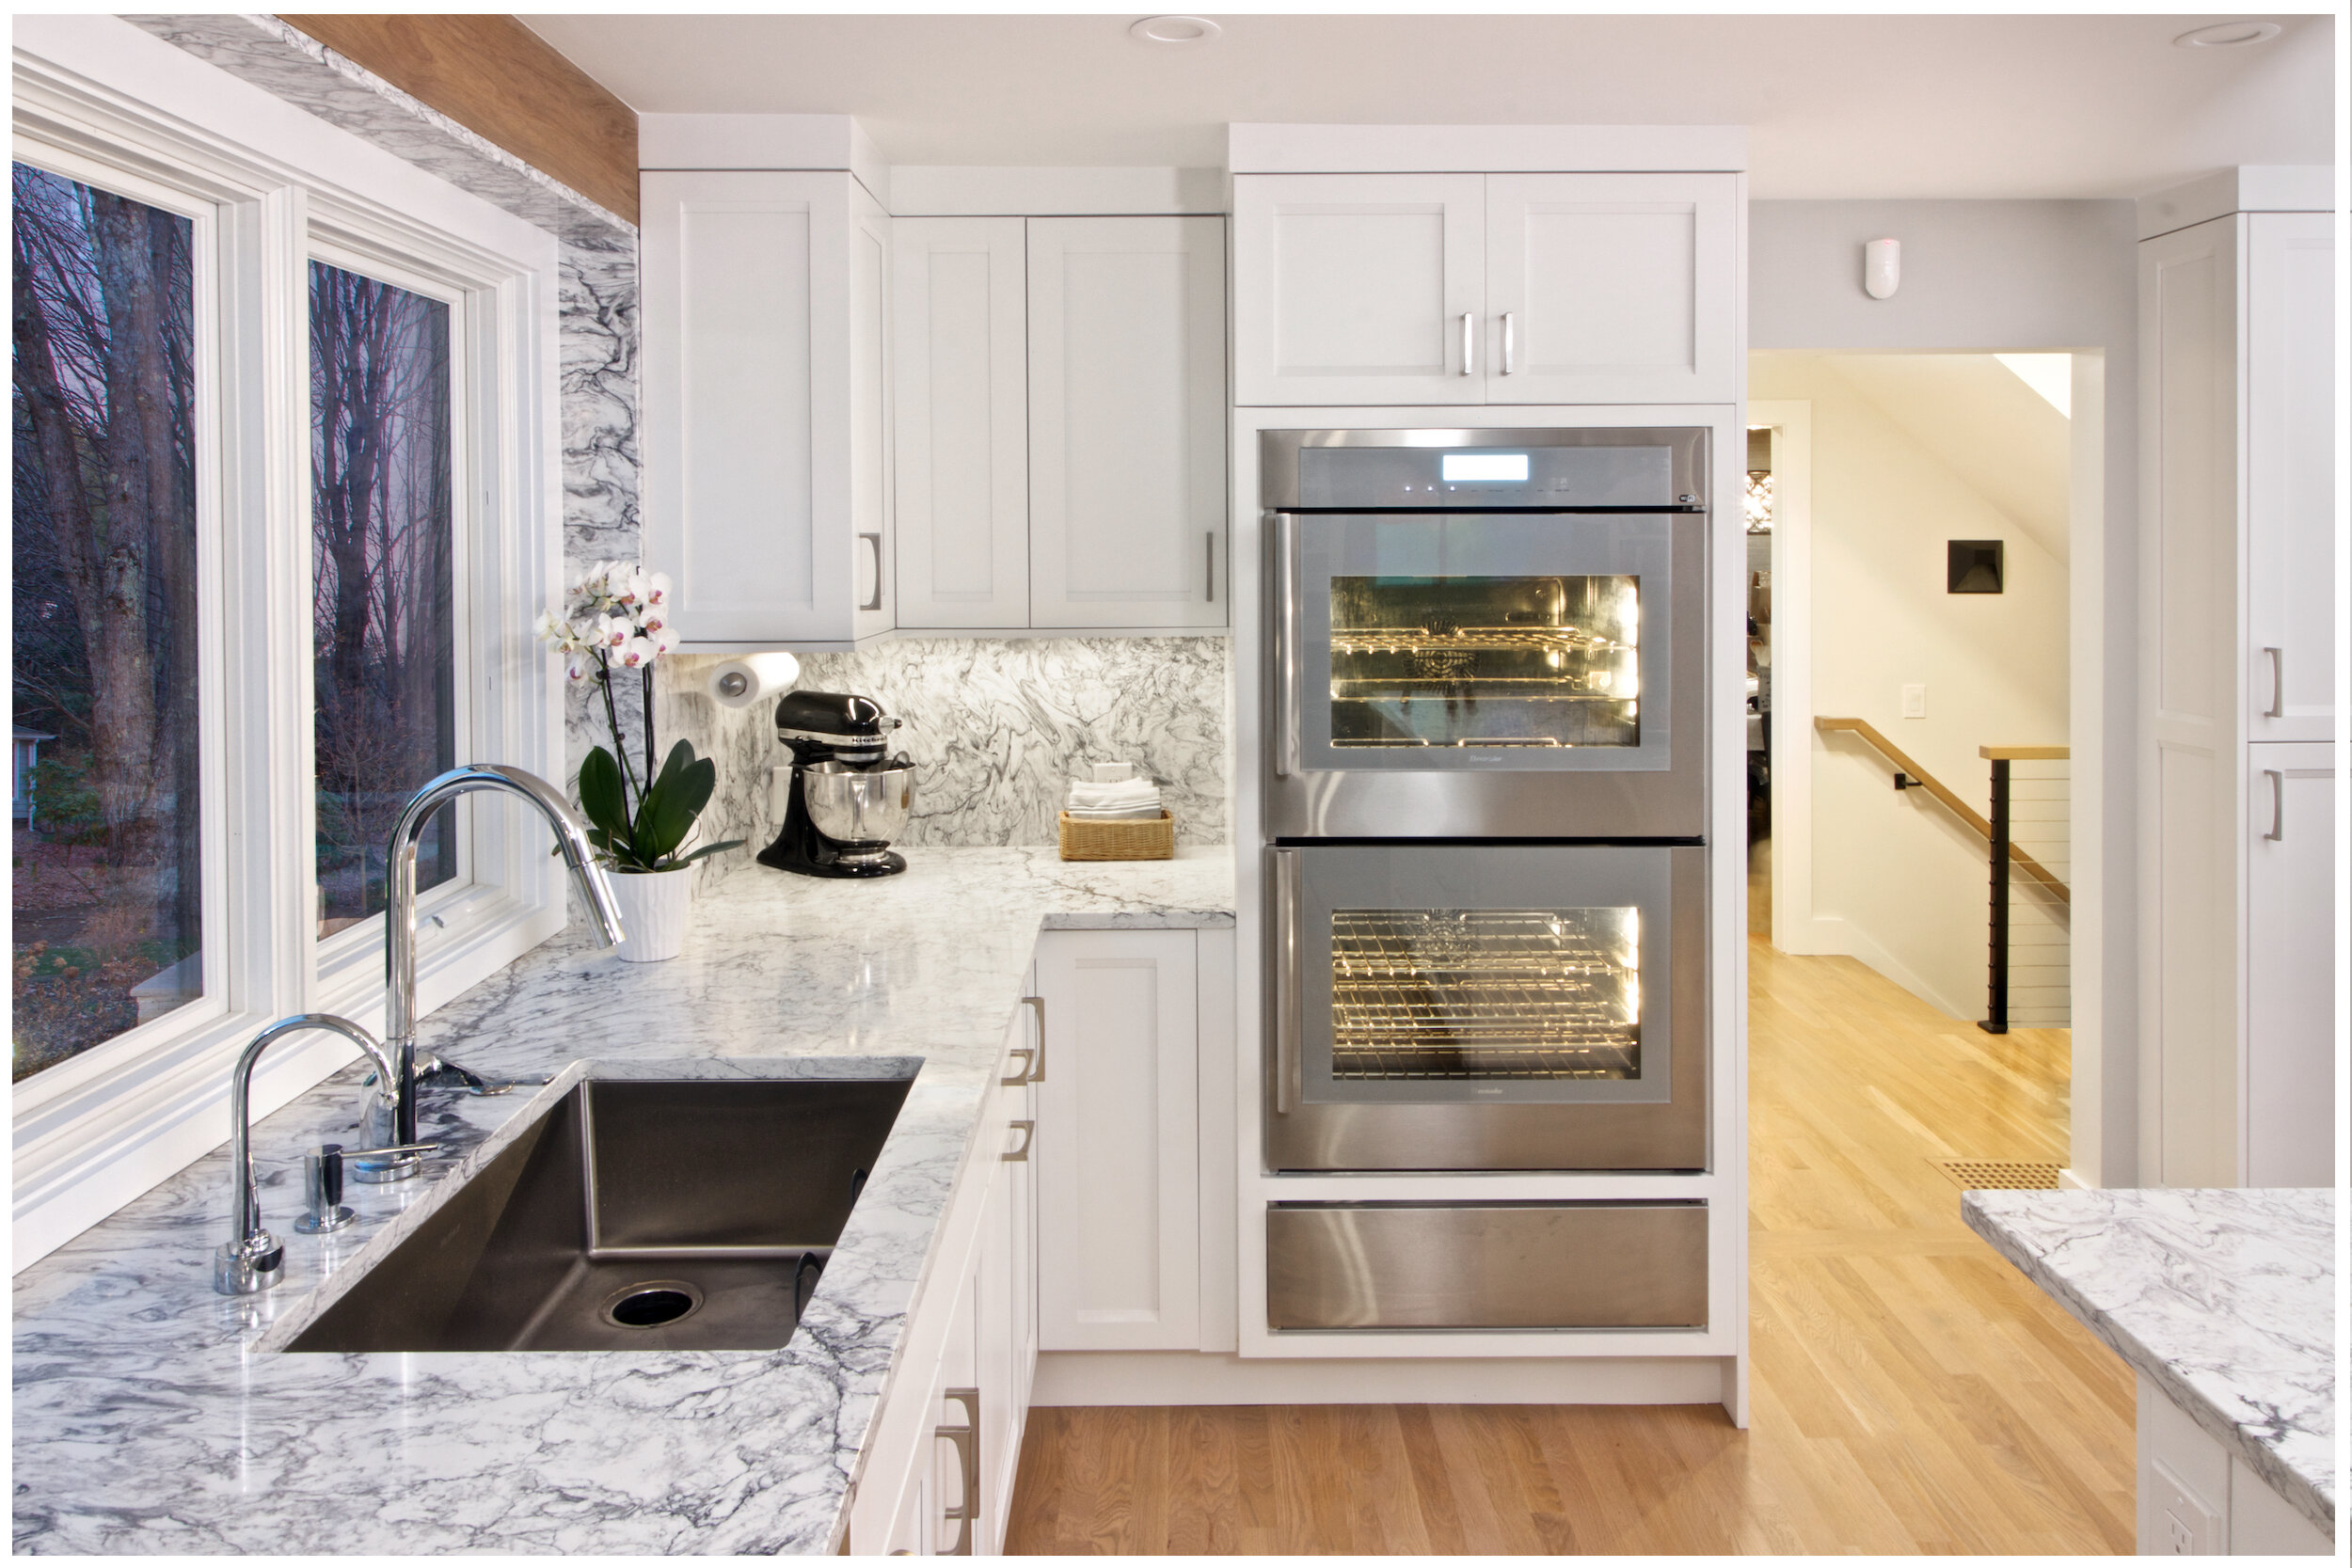 32 Kitchen Cabinets Around Refrigerator For More Storage Space  Farmhouse  kitchen design, Modern kitchen cabinets, Modern farmhouse kitchens